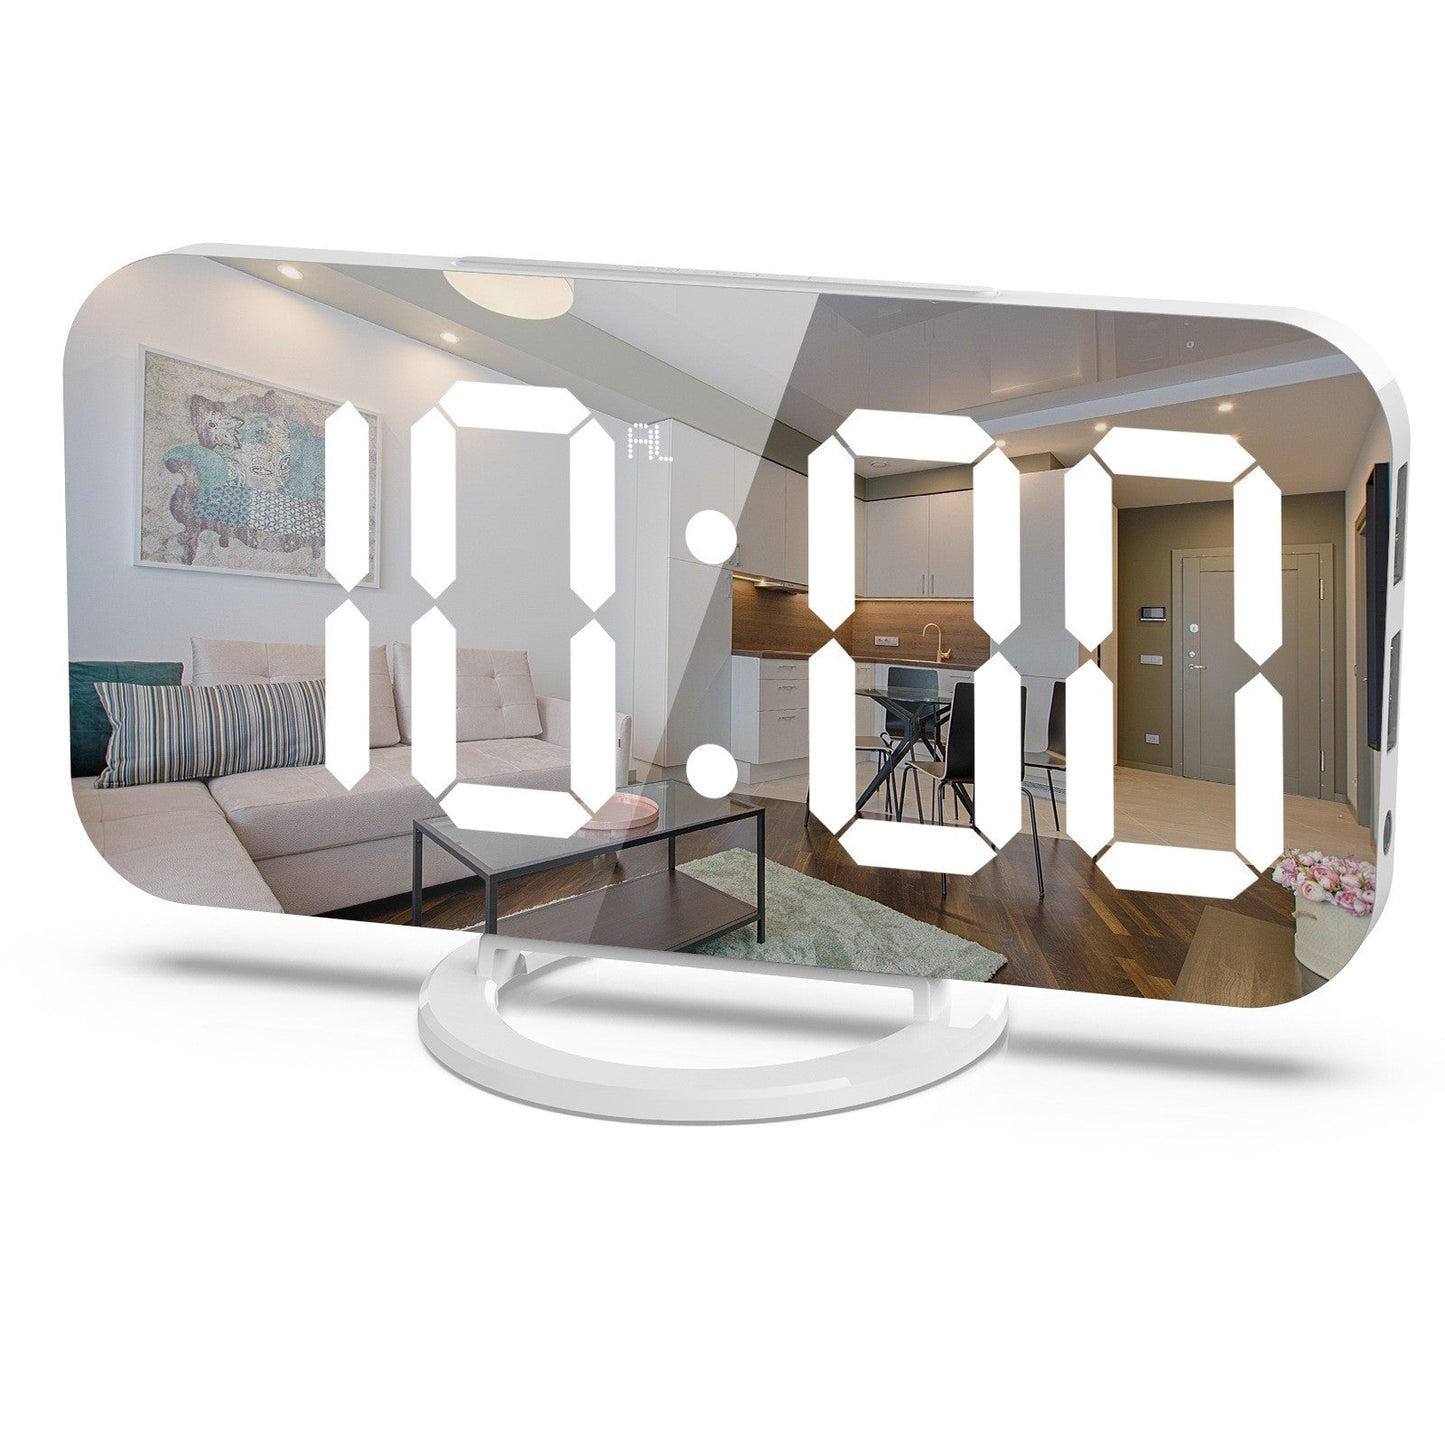 Ηλεκτρονικό ρολόι με καθρέφτη και ξυπνητήρι, φόρτιση USB, λευκό